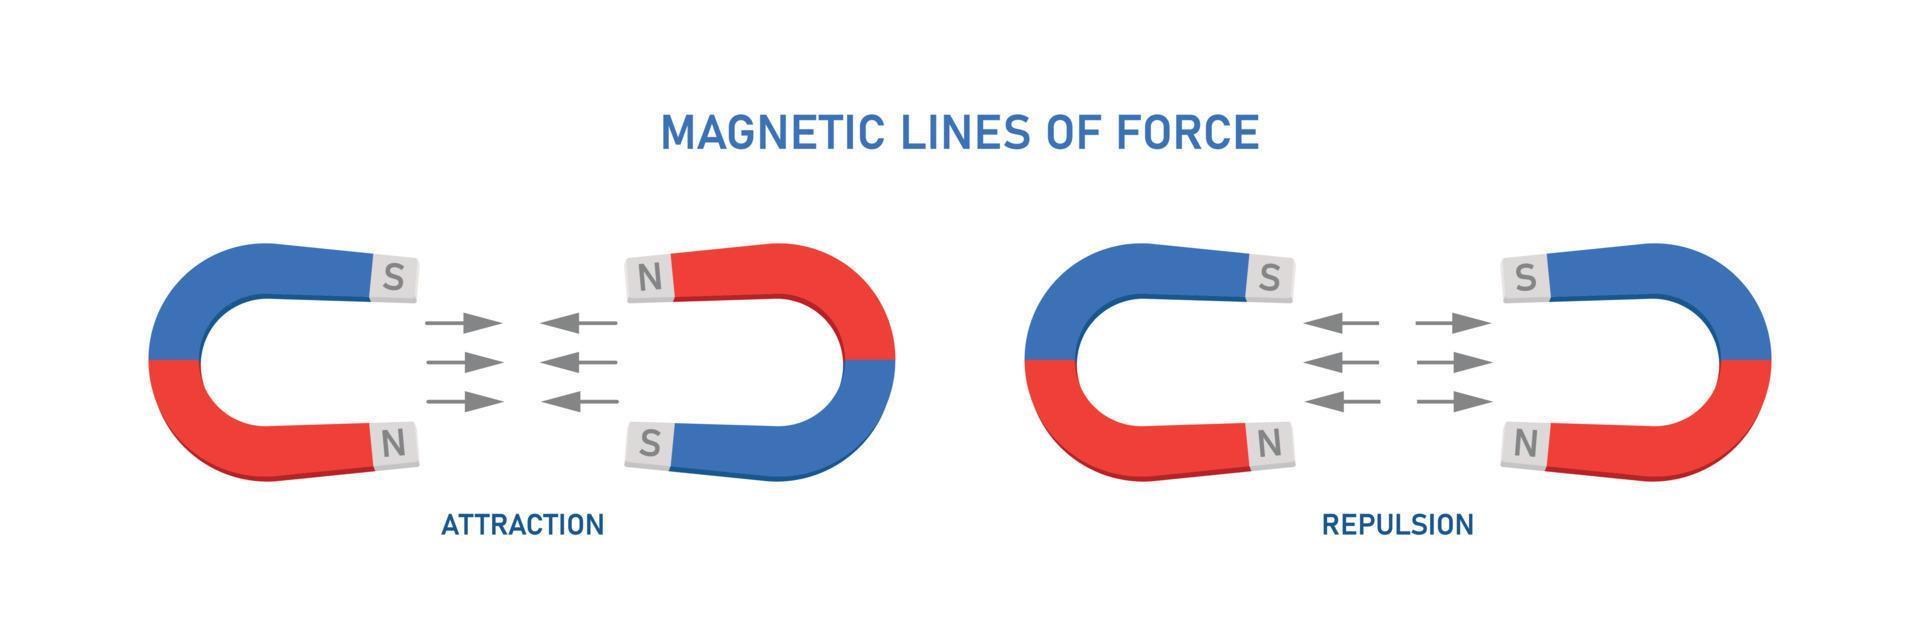 lignes de force magnétiques. éducation. illustration vectorielle vecteur